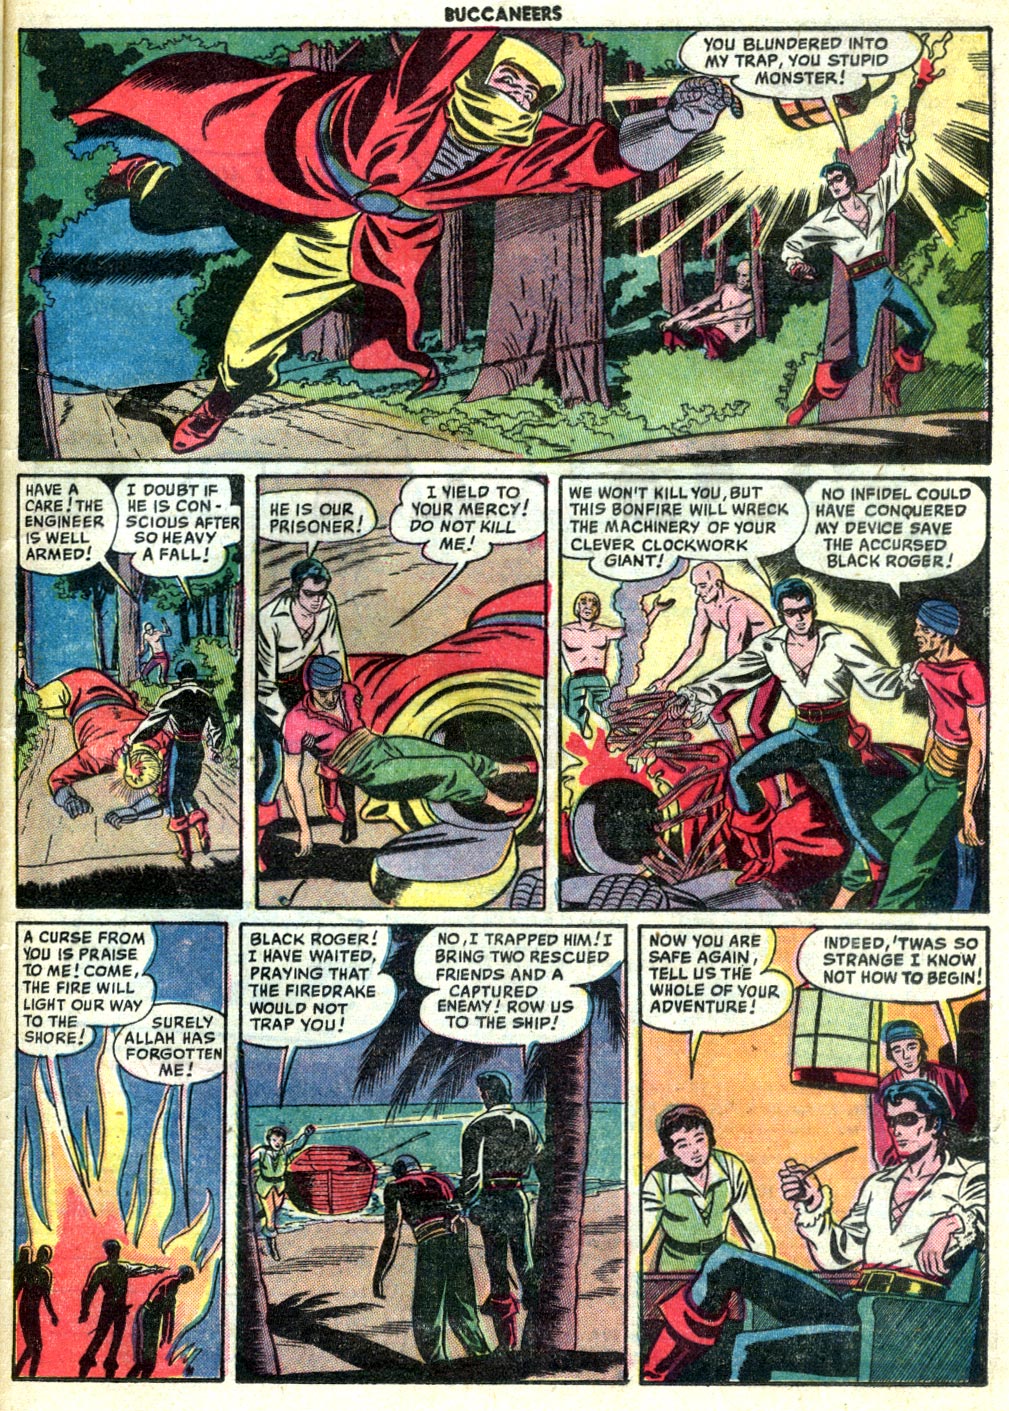 Read online Buccaneers comic -  Issue #23 - 33